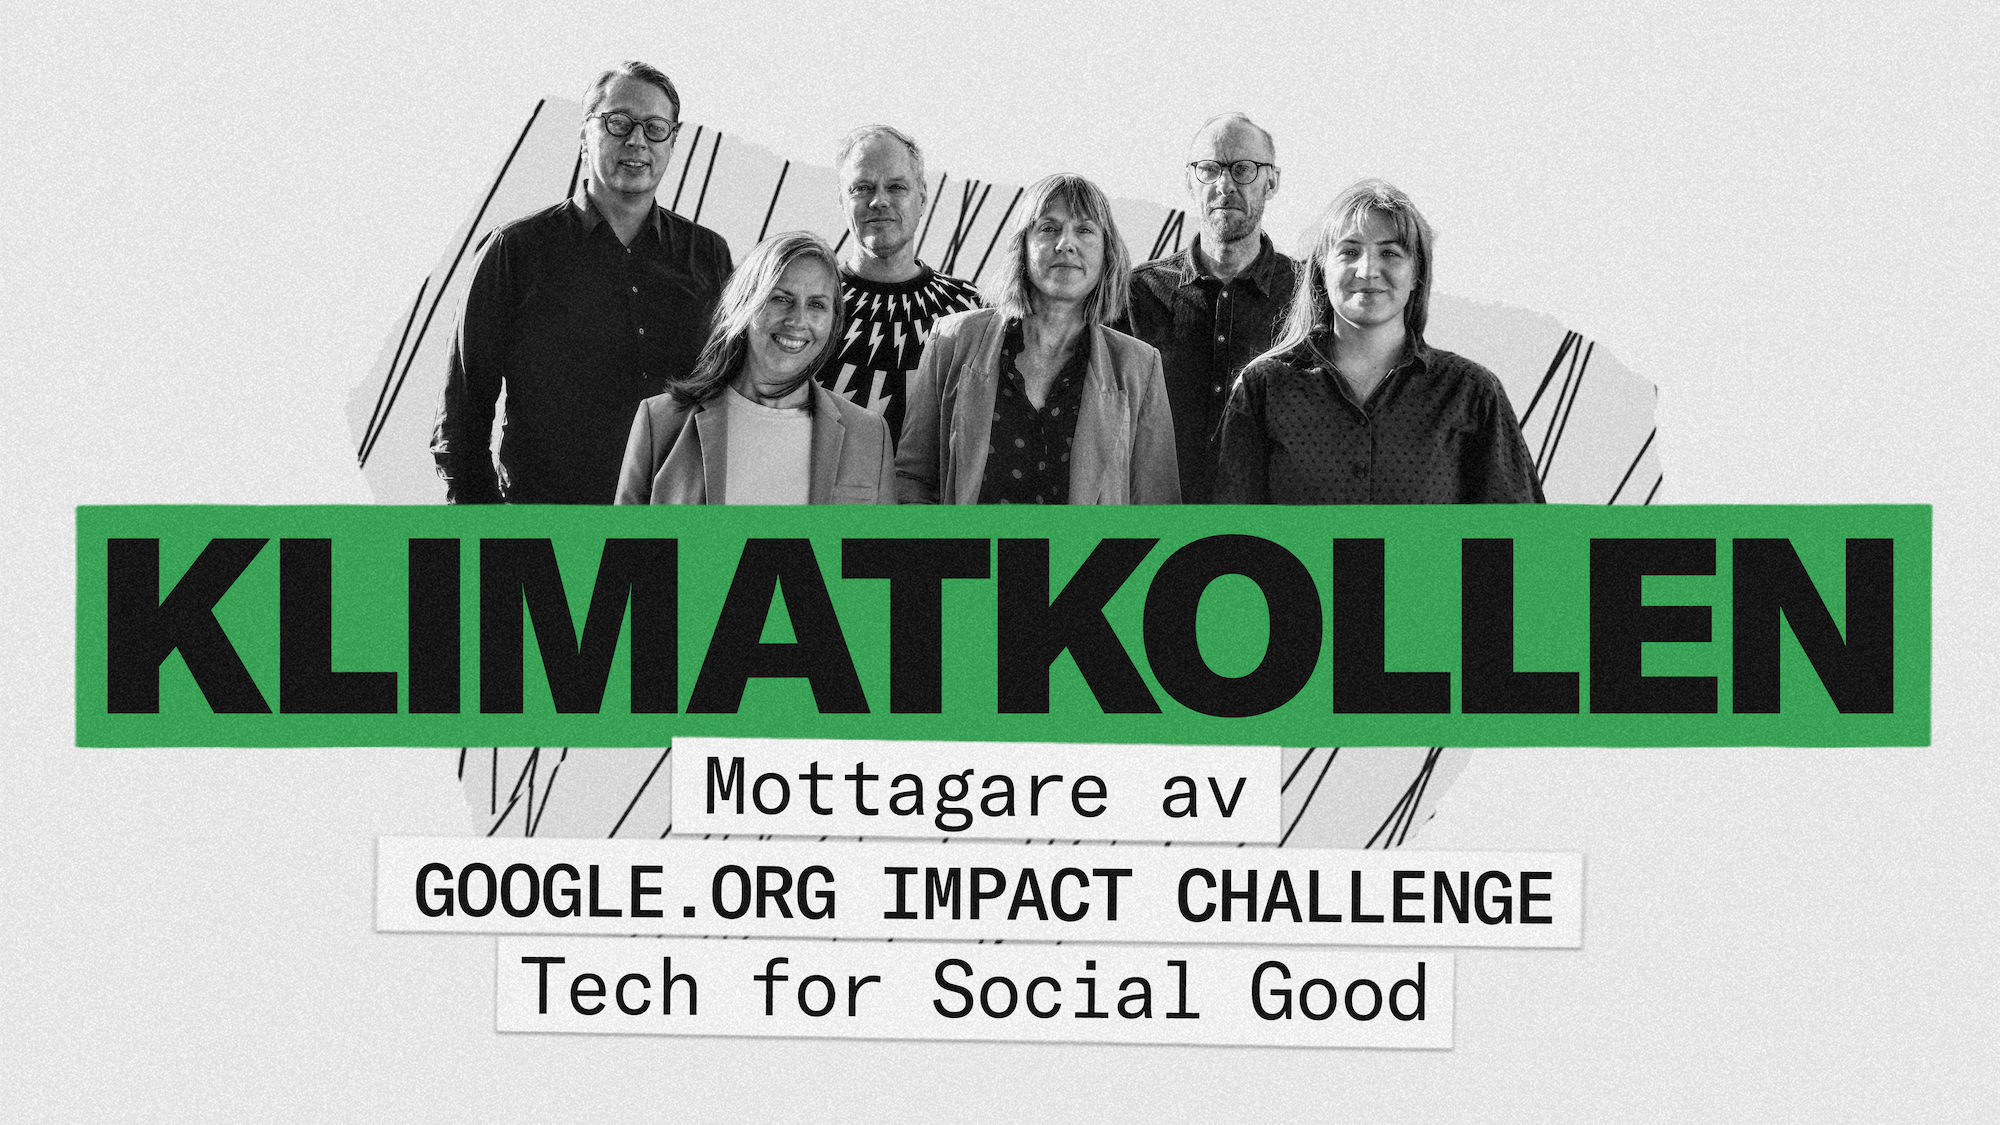 Klimatkollen receives support from Google.org Impact Challenge